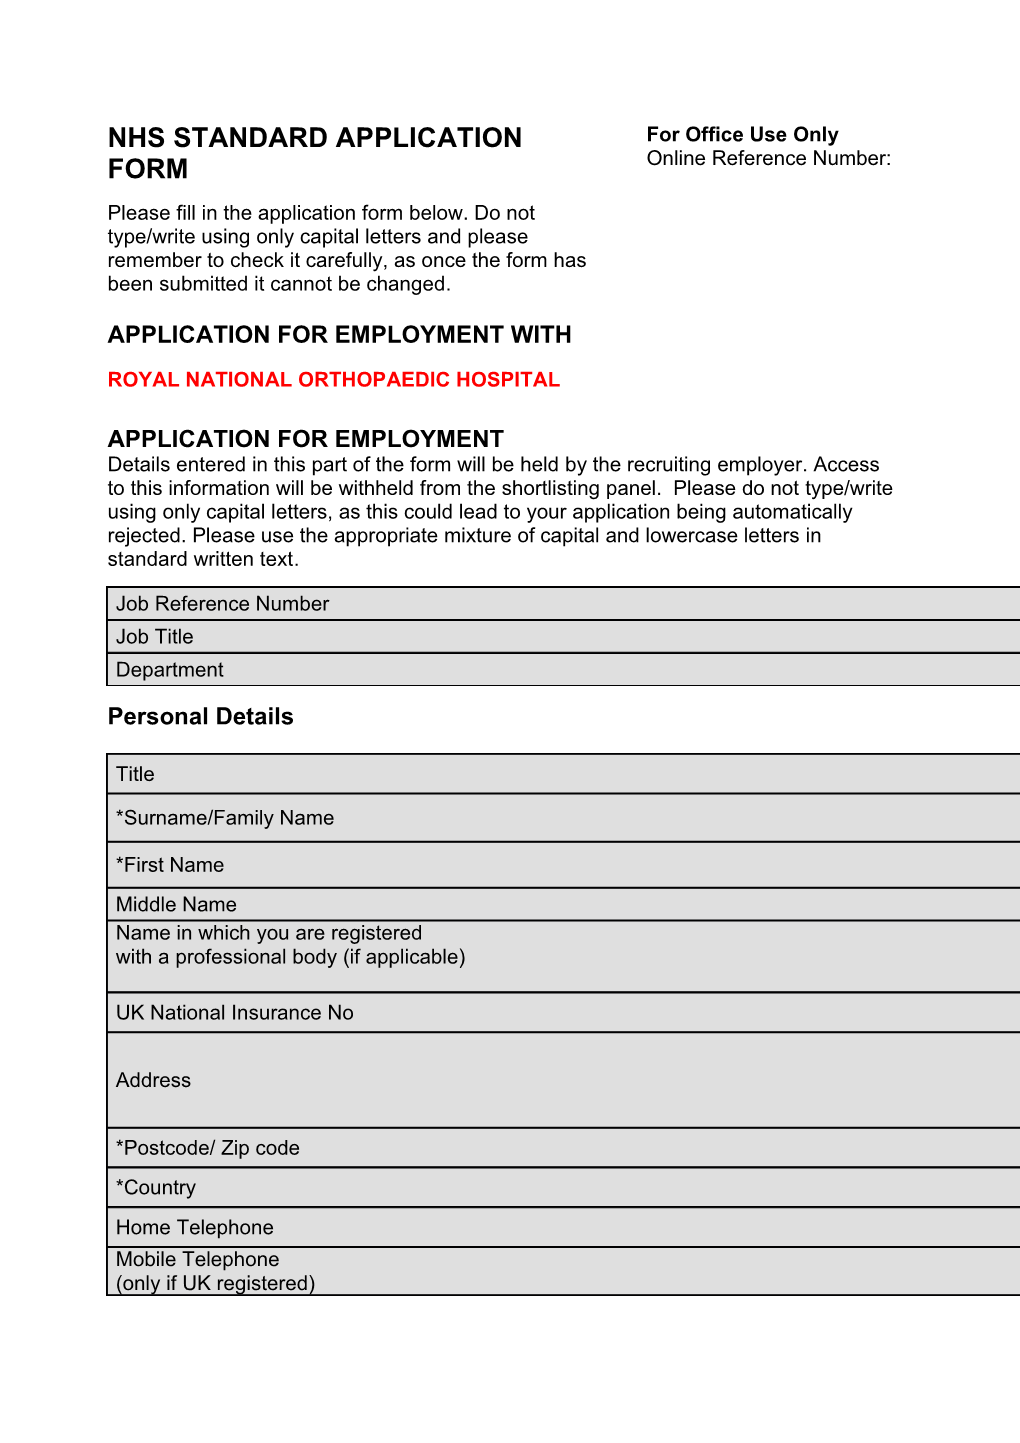 NHS Standard Application Form s1